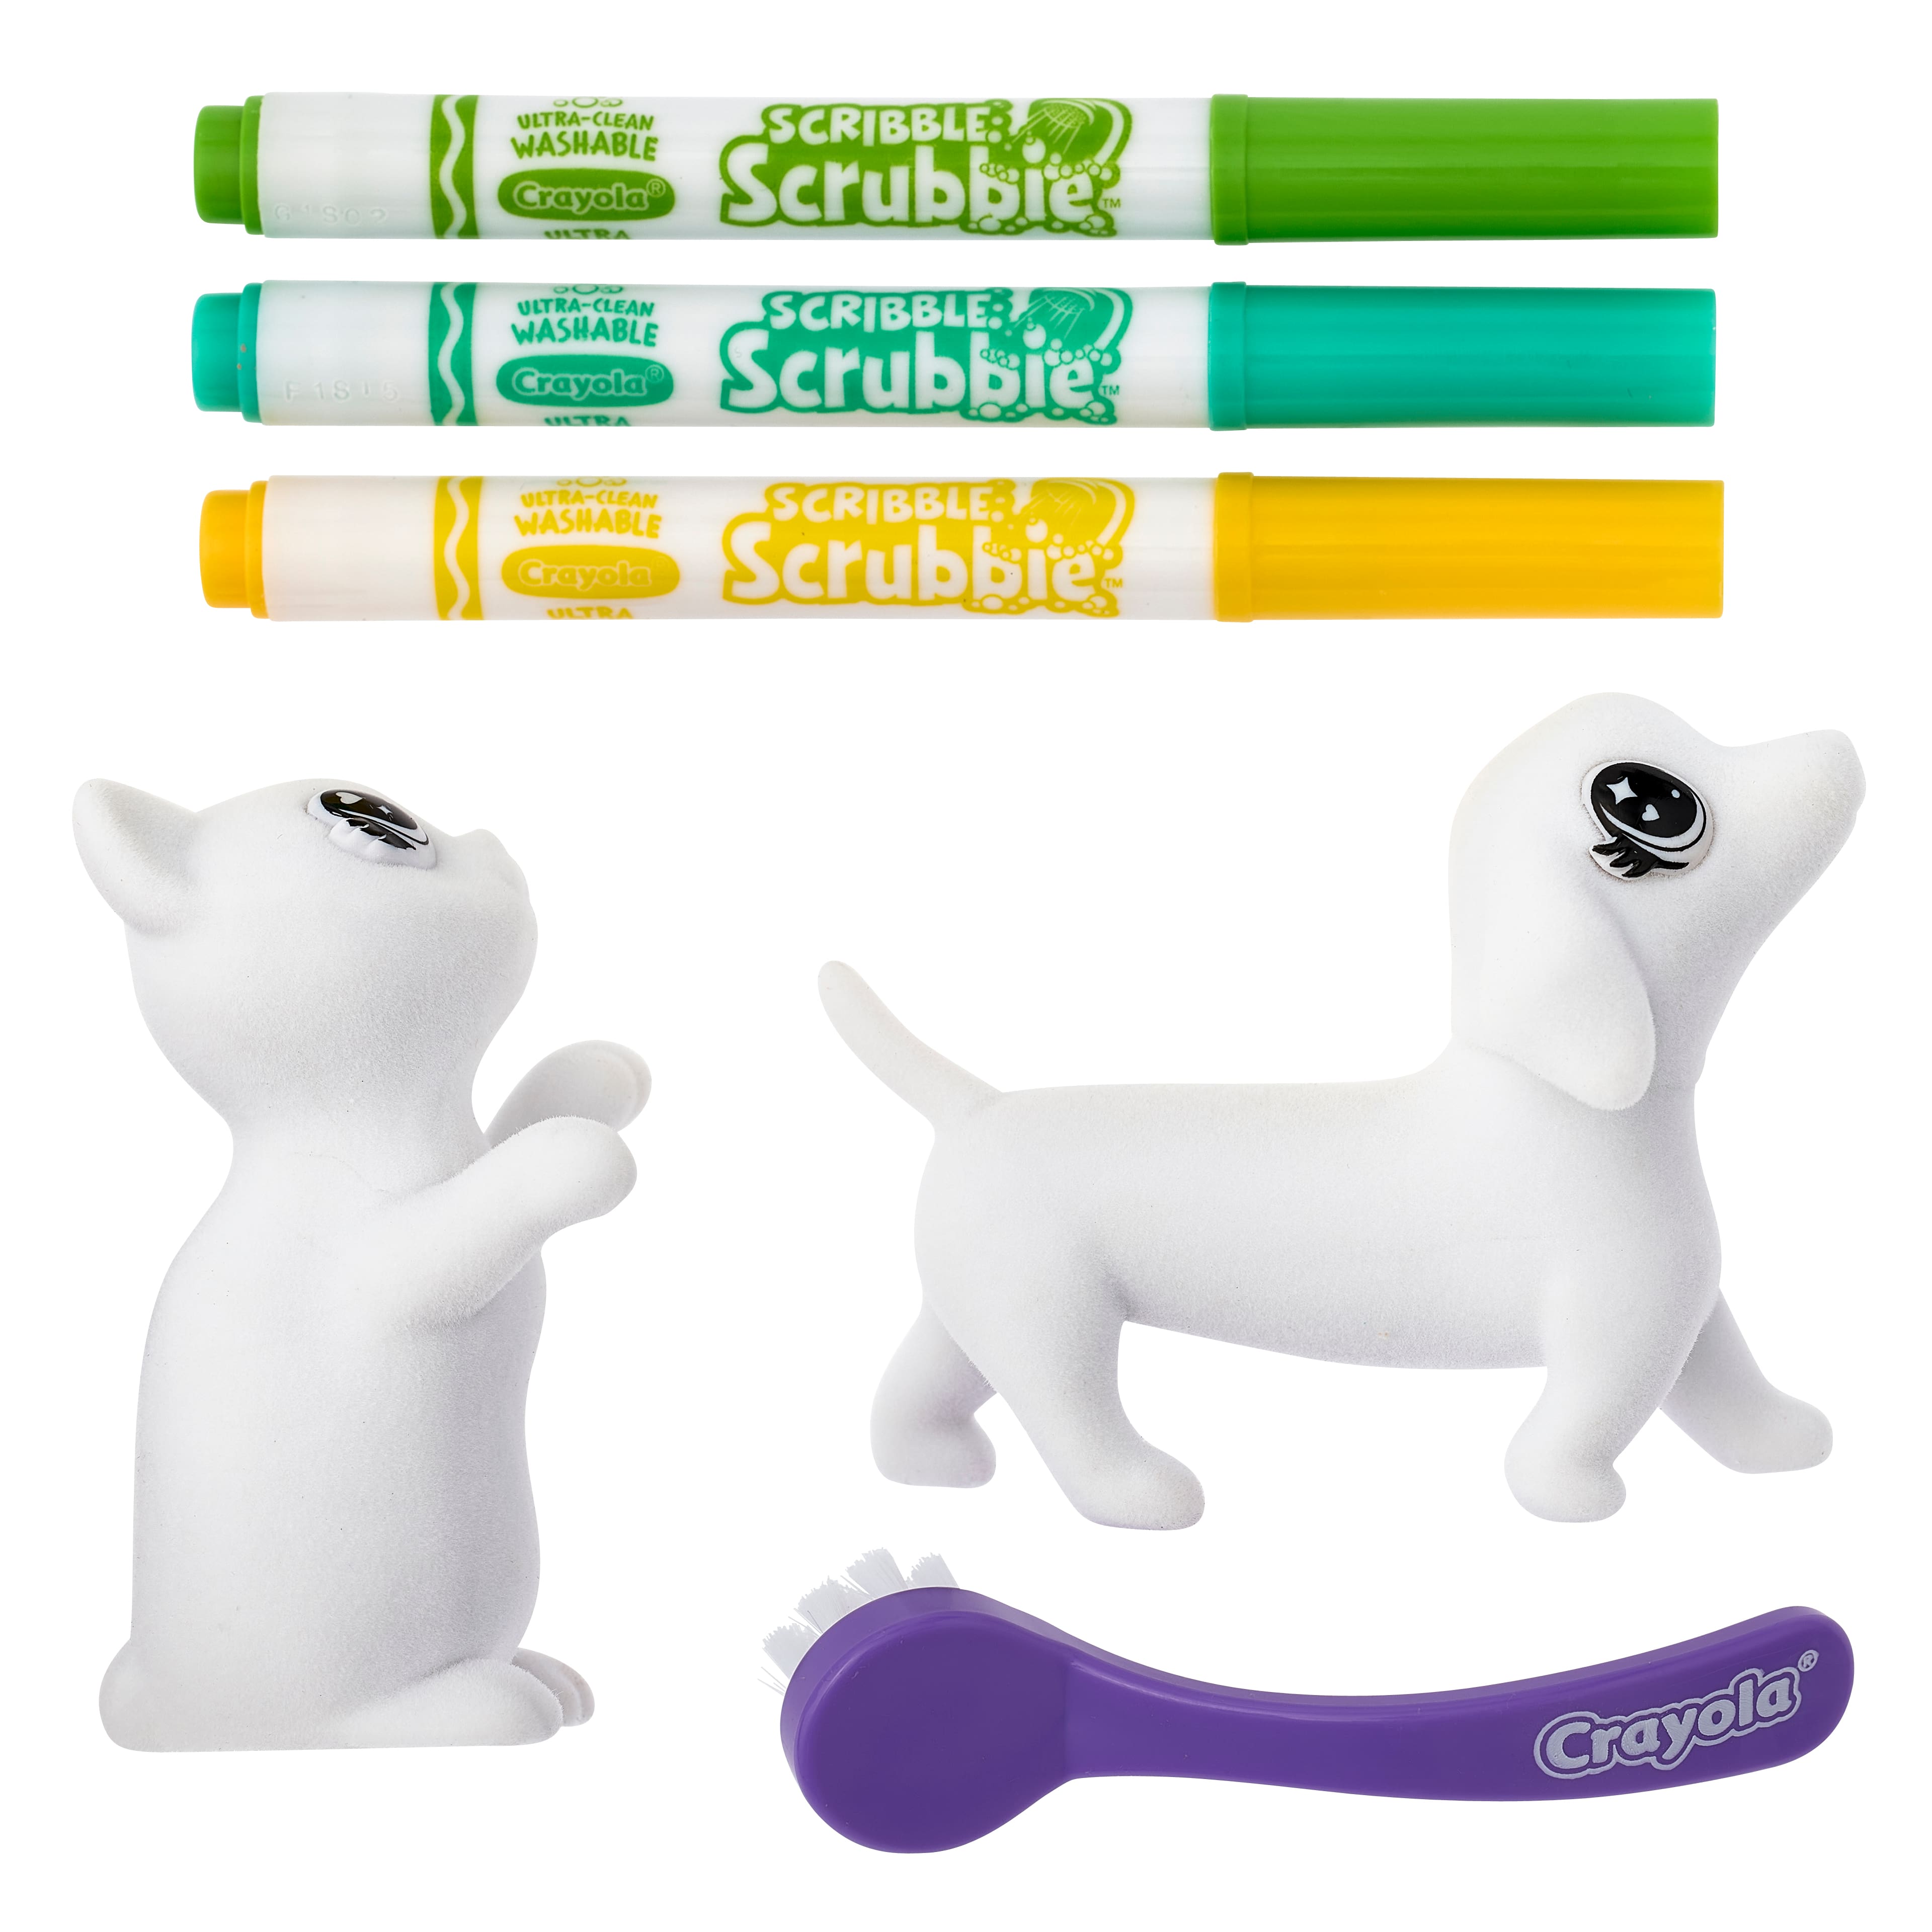 Crayola Washimals Washable Animals Playset - Dog and cat 